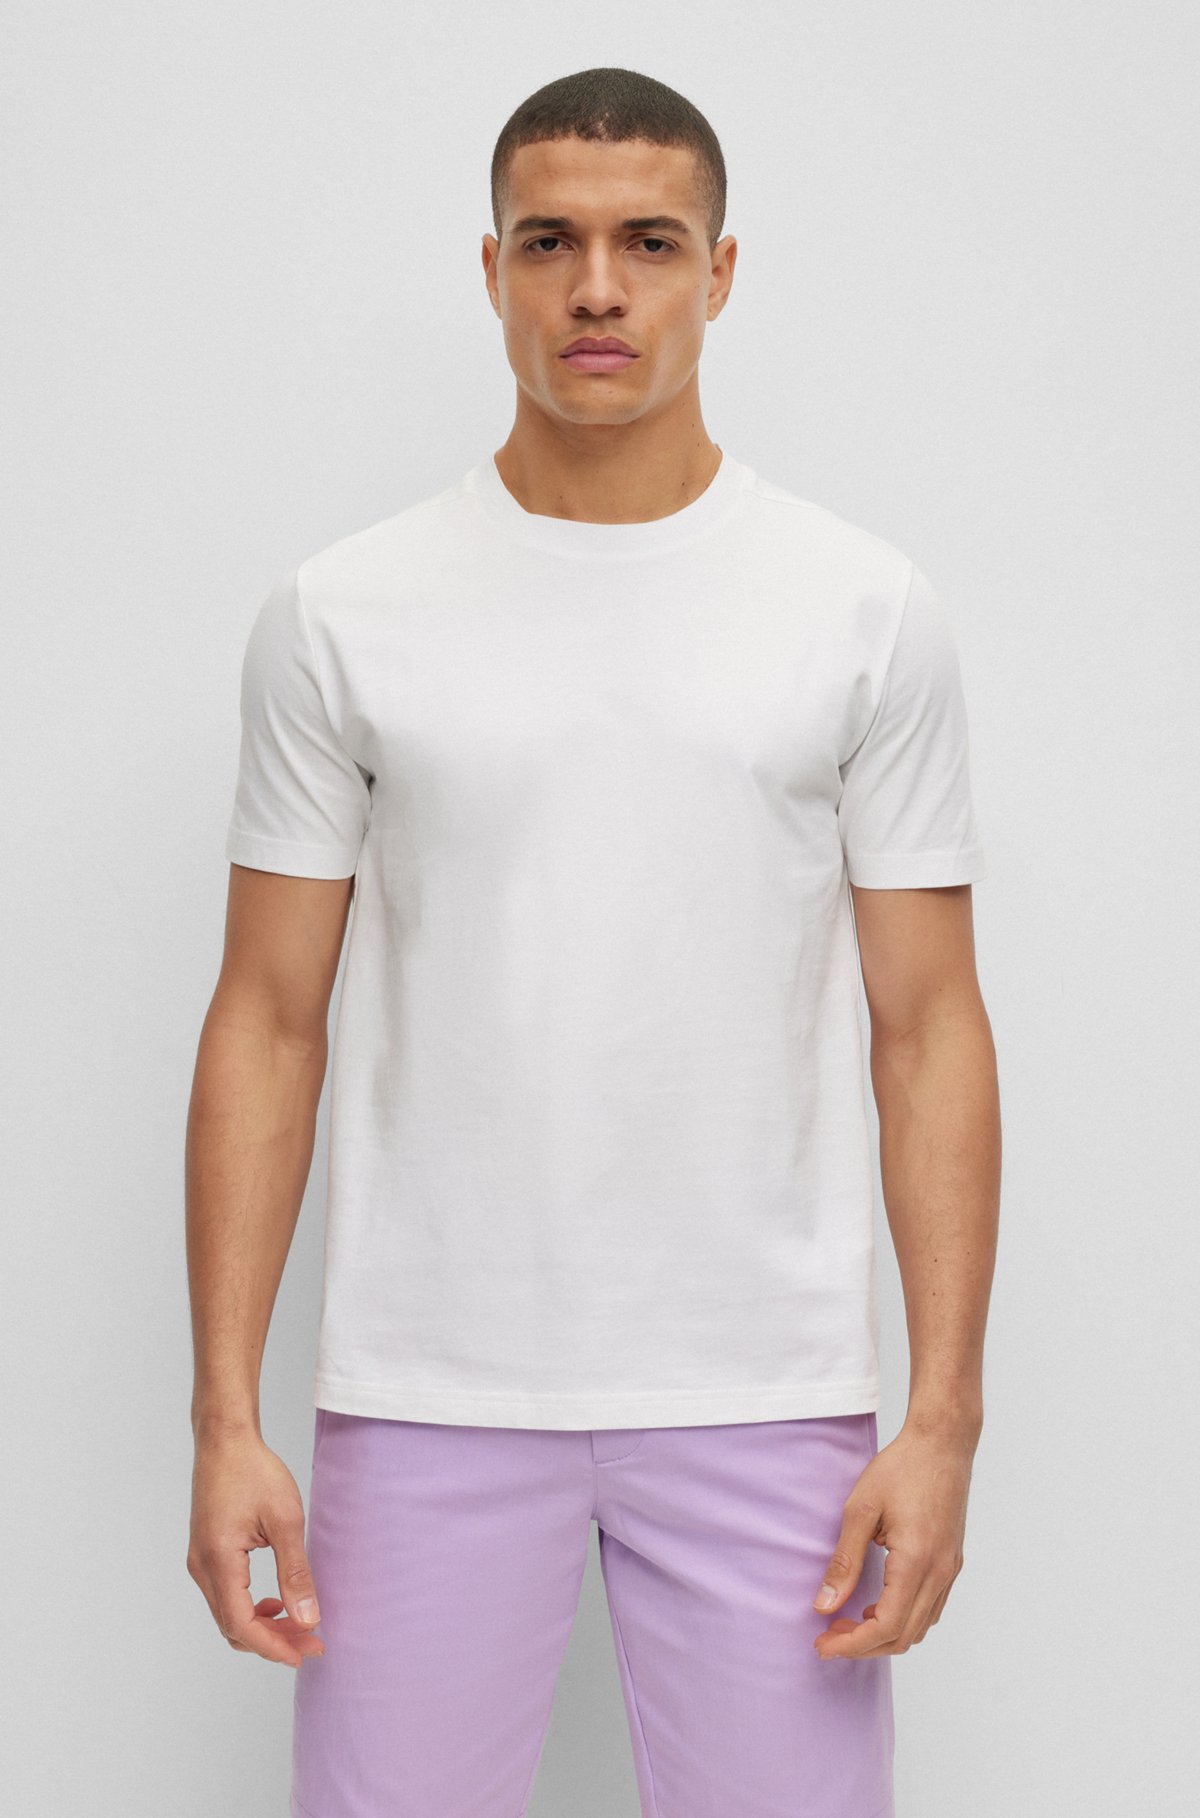 BOSS - Cotton-jersey T-shirt with logo collar